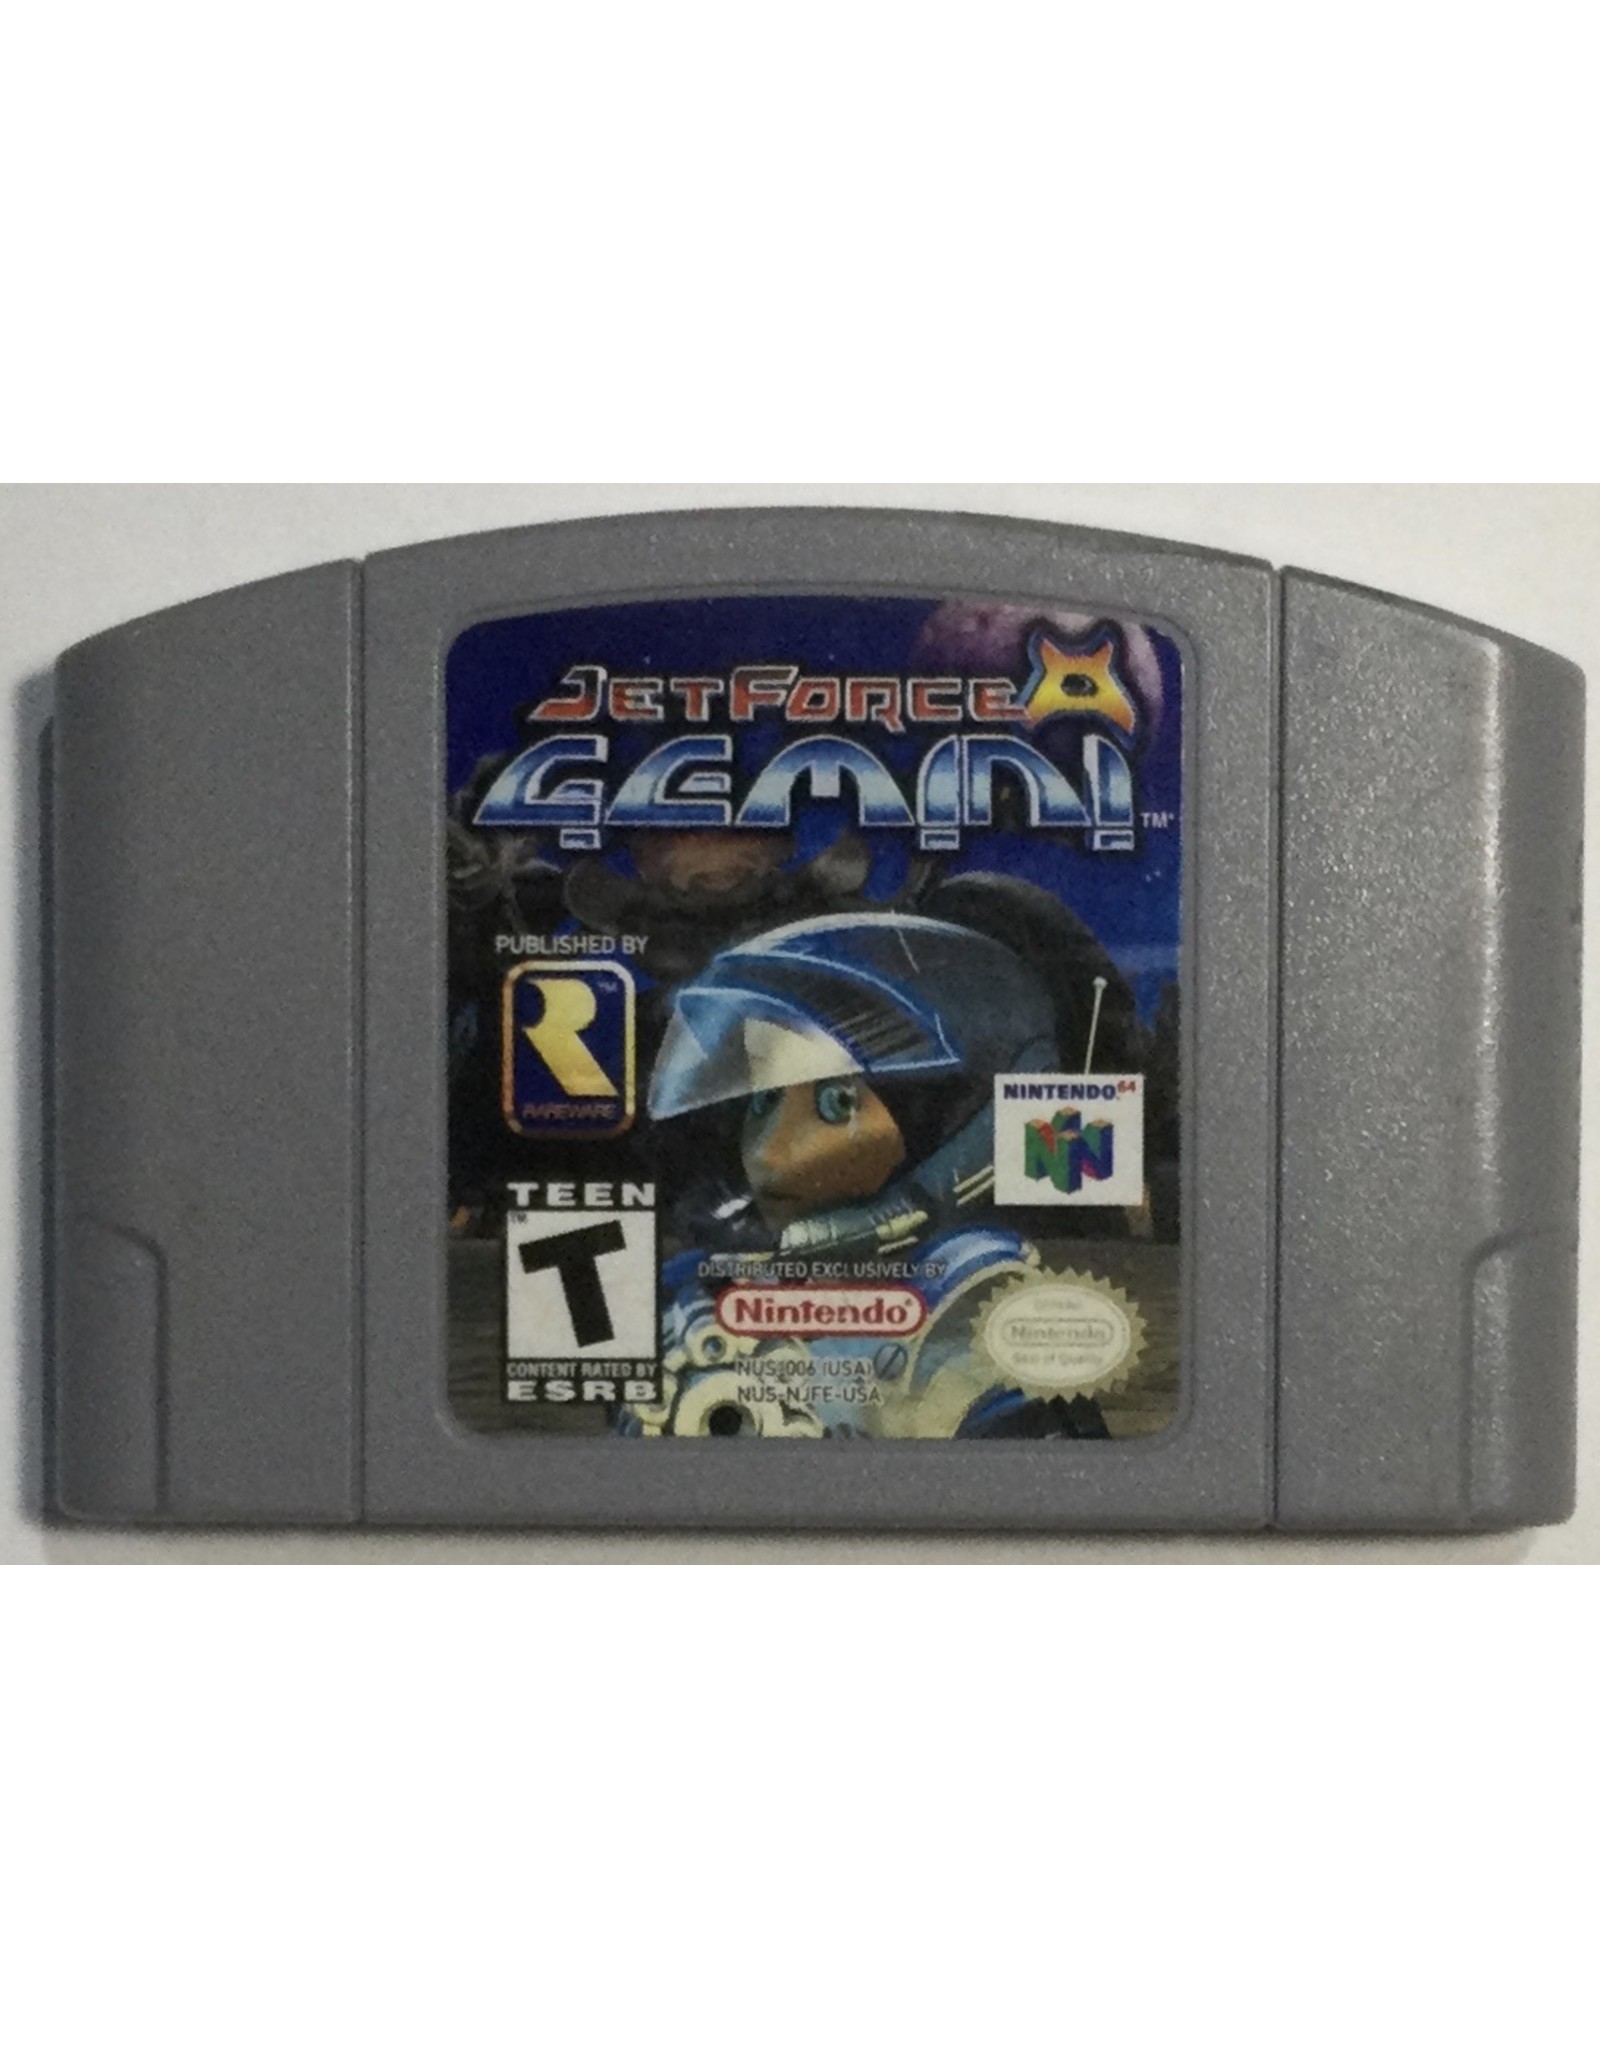 RAREWARE Jet Force Gemini for Nintendo 64 (N64)